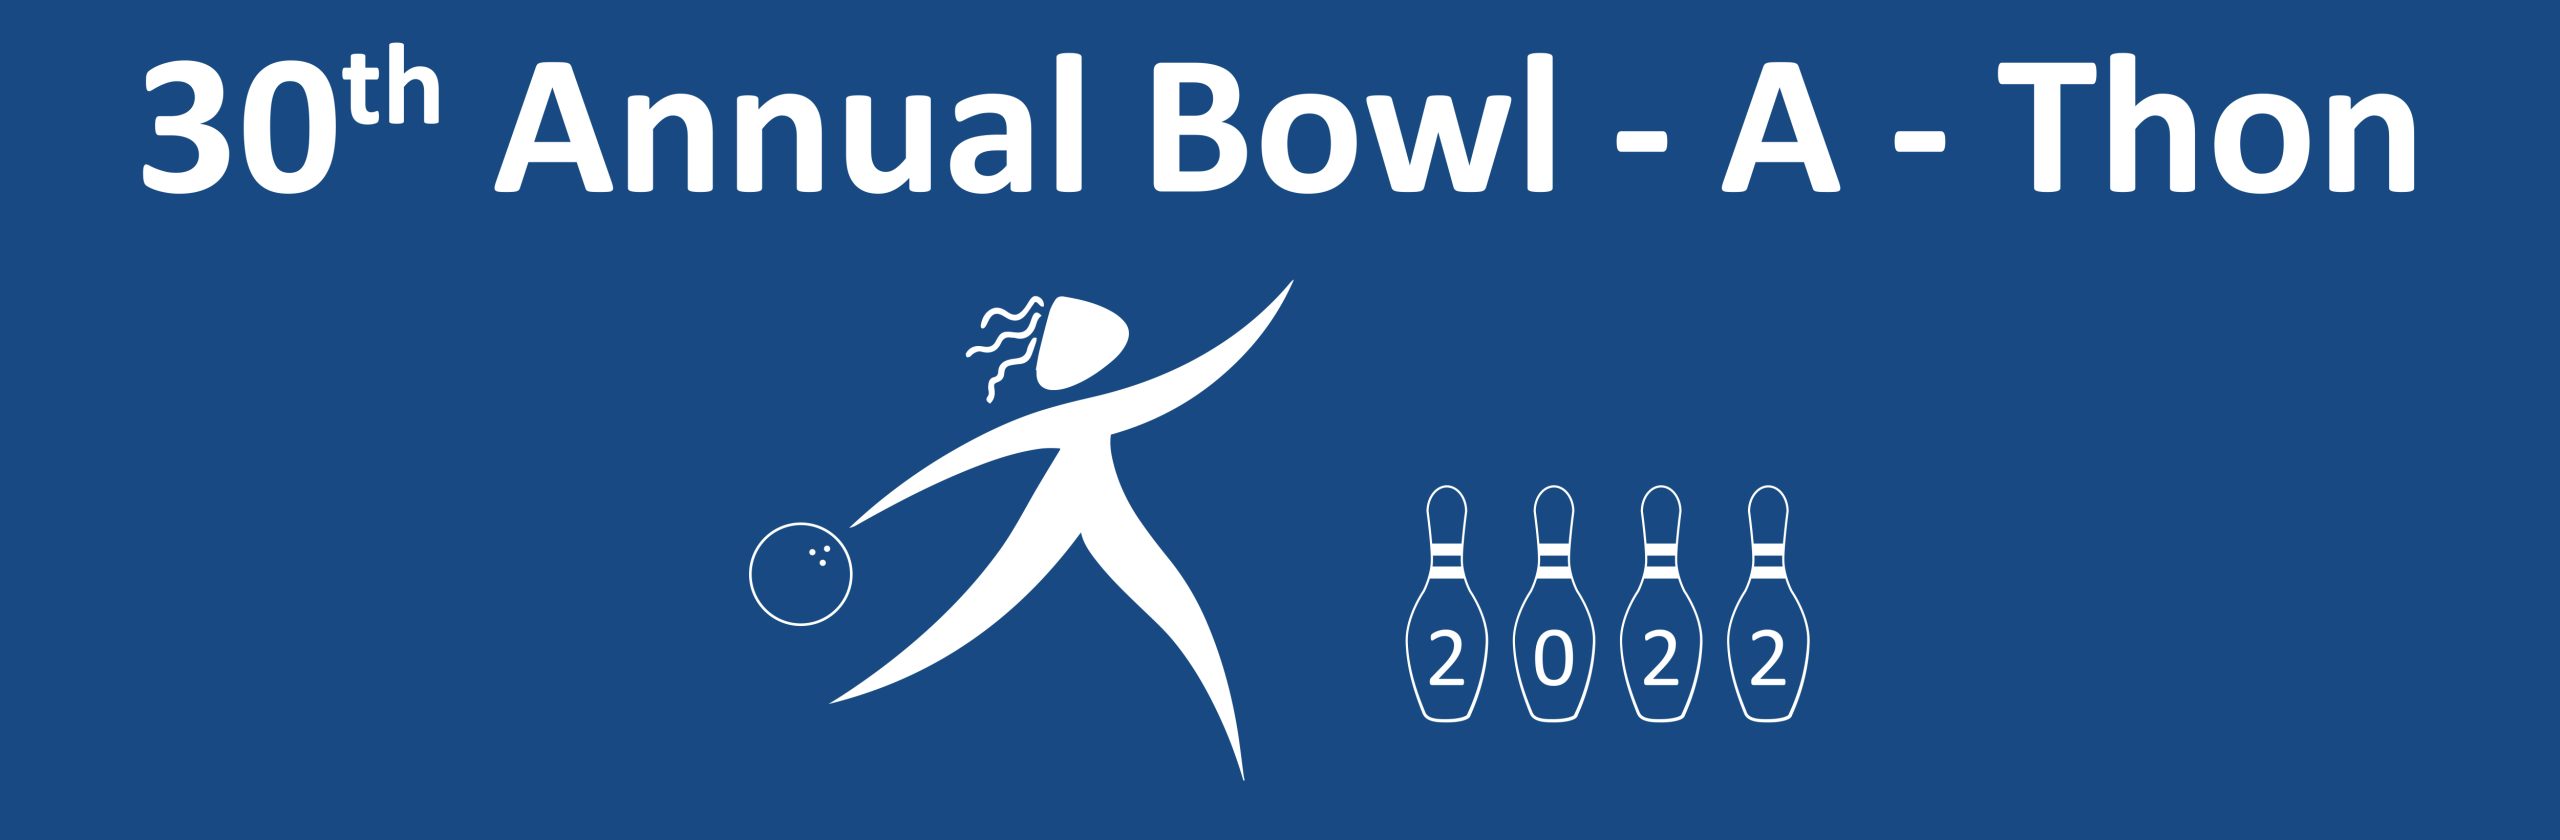 30th Annual Bowl-a-thon